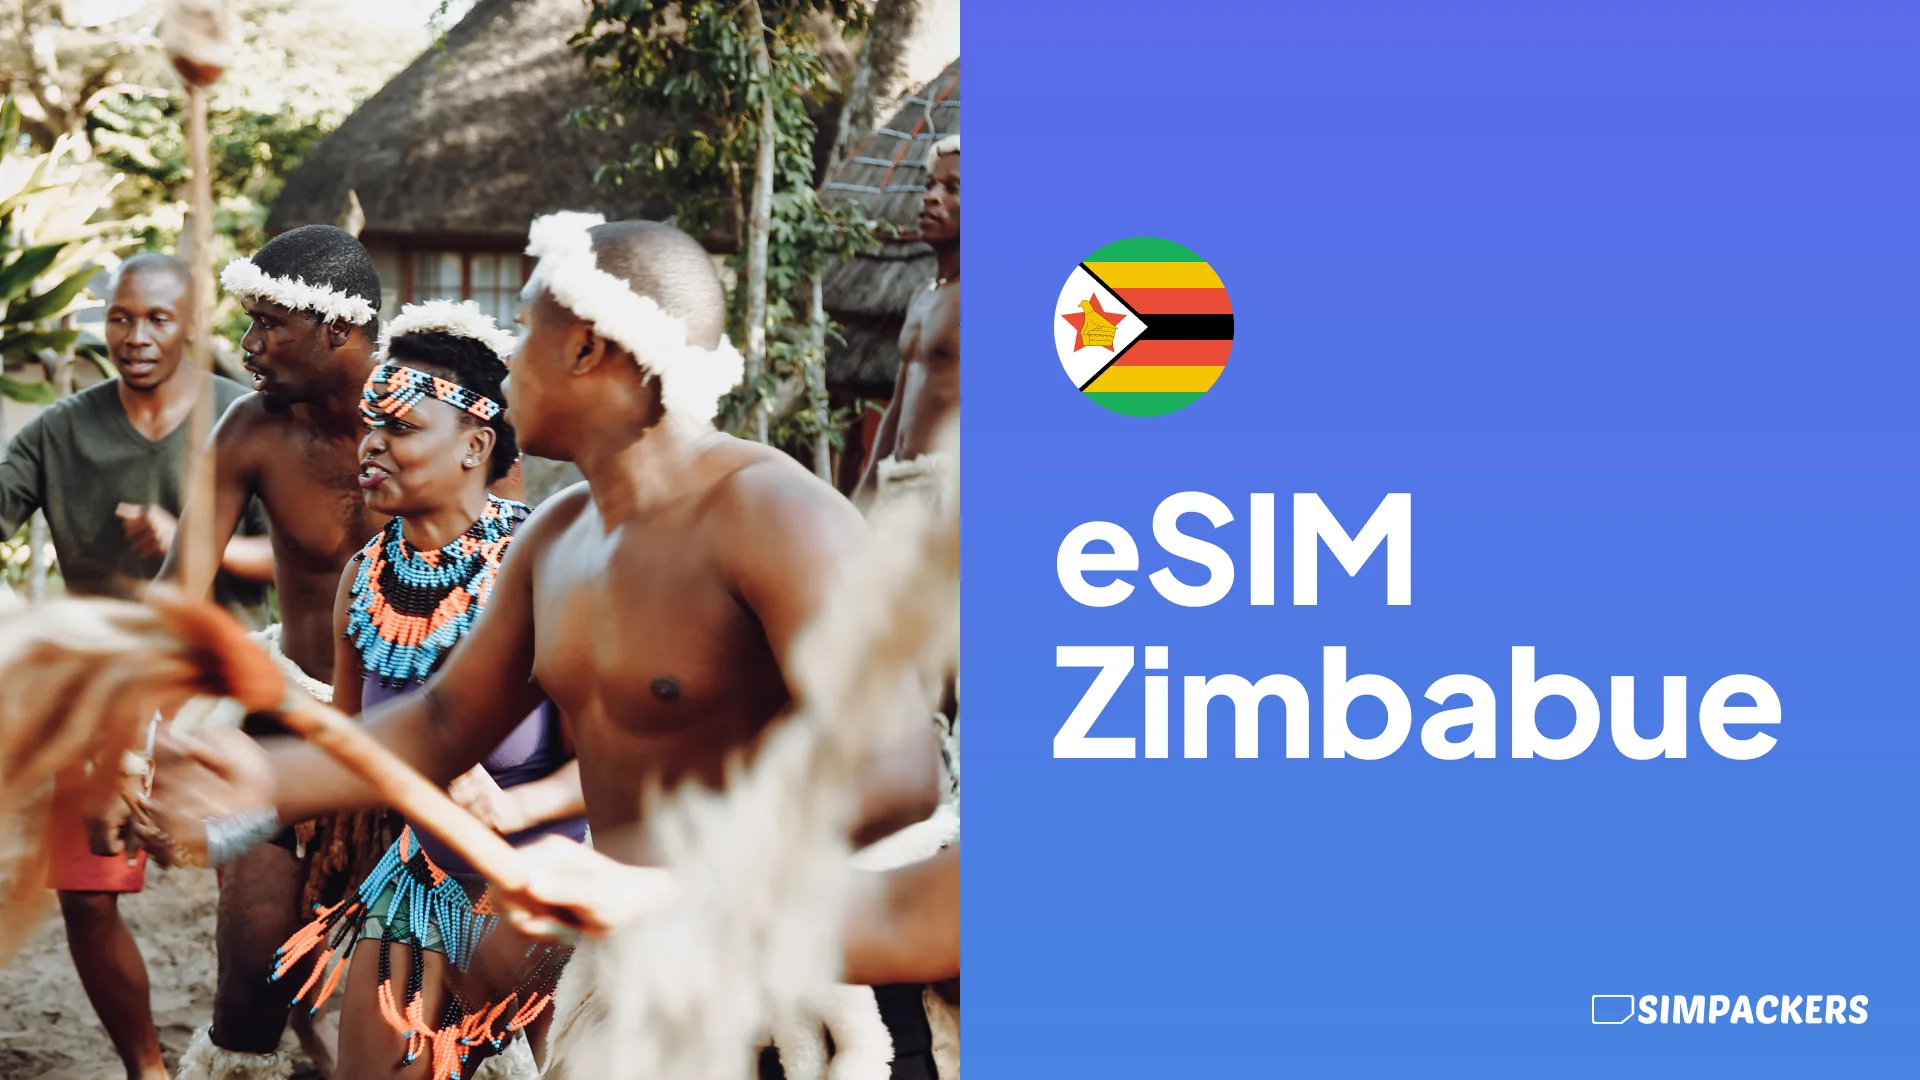 ES/FEATURED_IMAGES/esim-zimbabue.webp